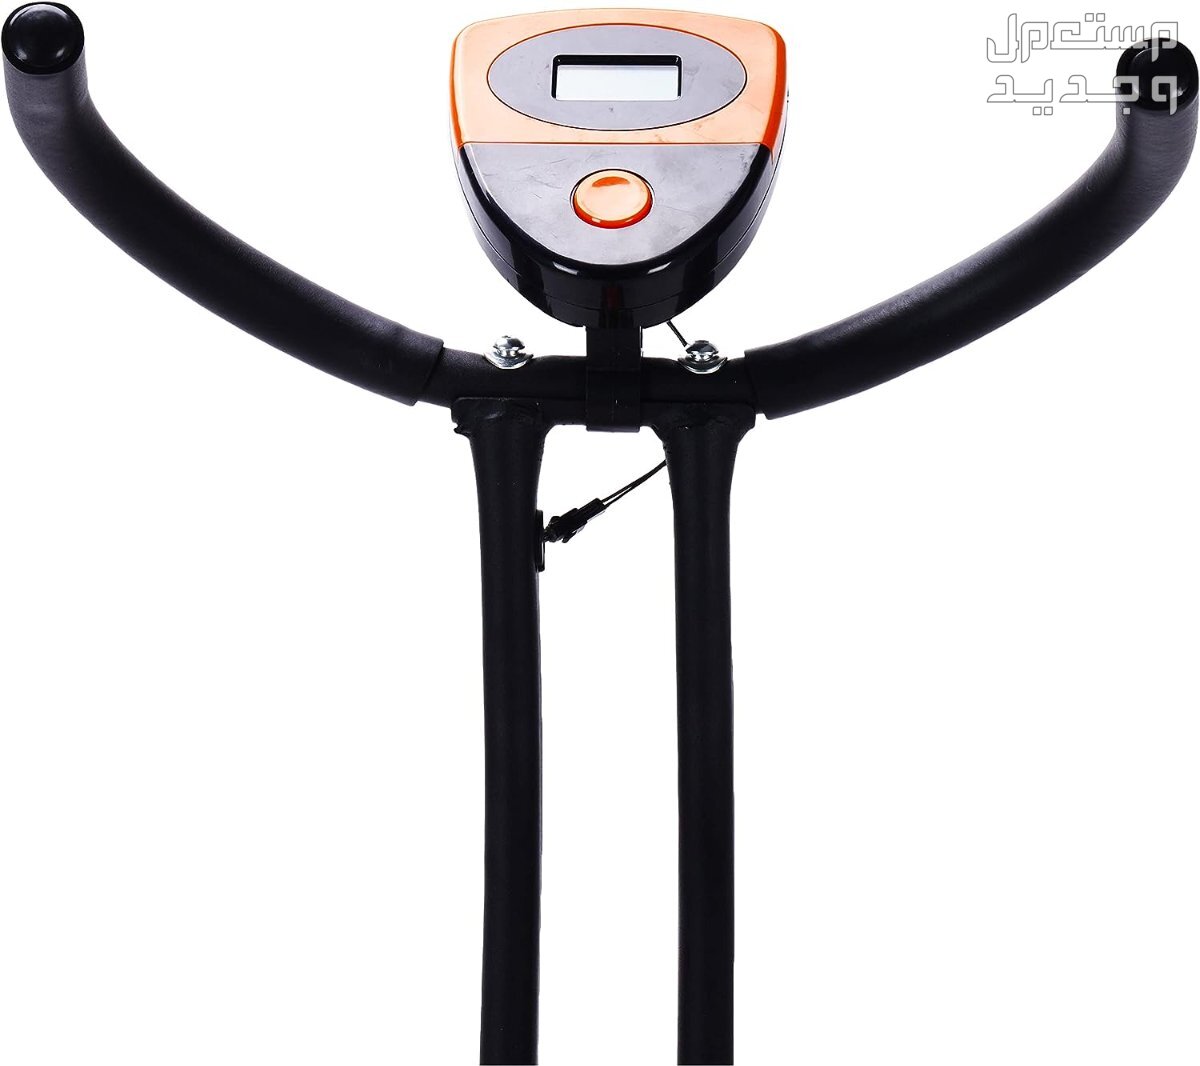 ارخص اجهزة رياضية مستعملة بالمواصفات والصور والاسعار في مصر جهاز ‎دراجة كارديو ‎بودي بيلدر موديل ‎38-1112-Orange